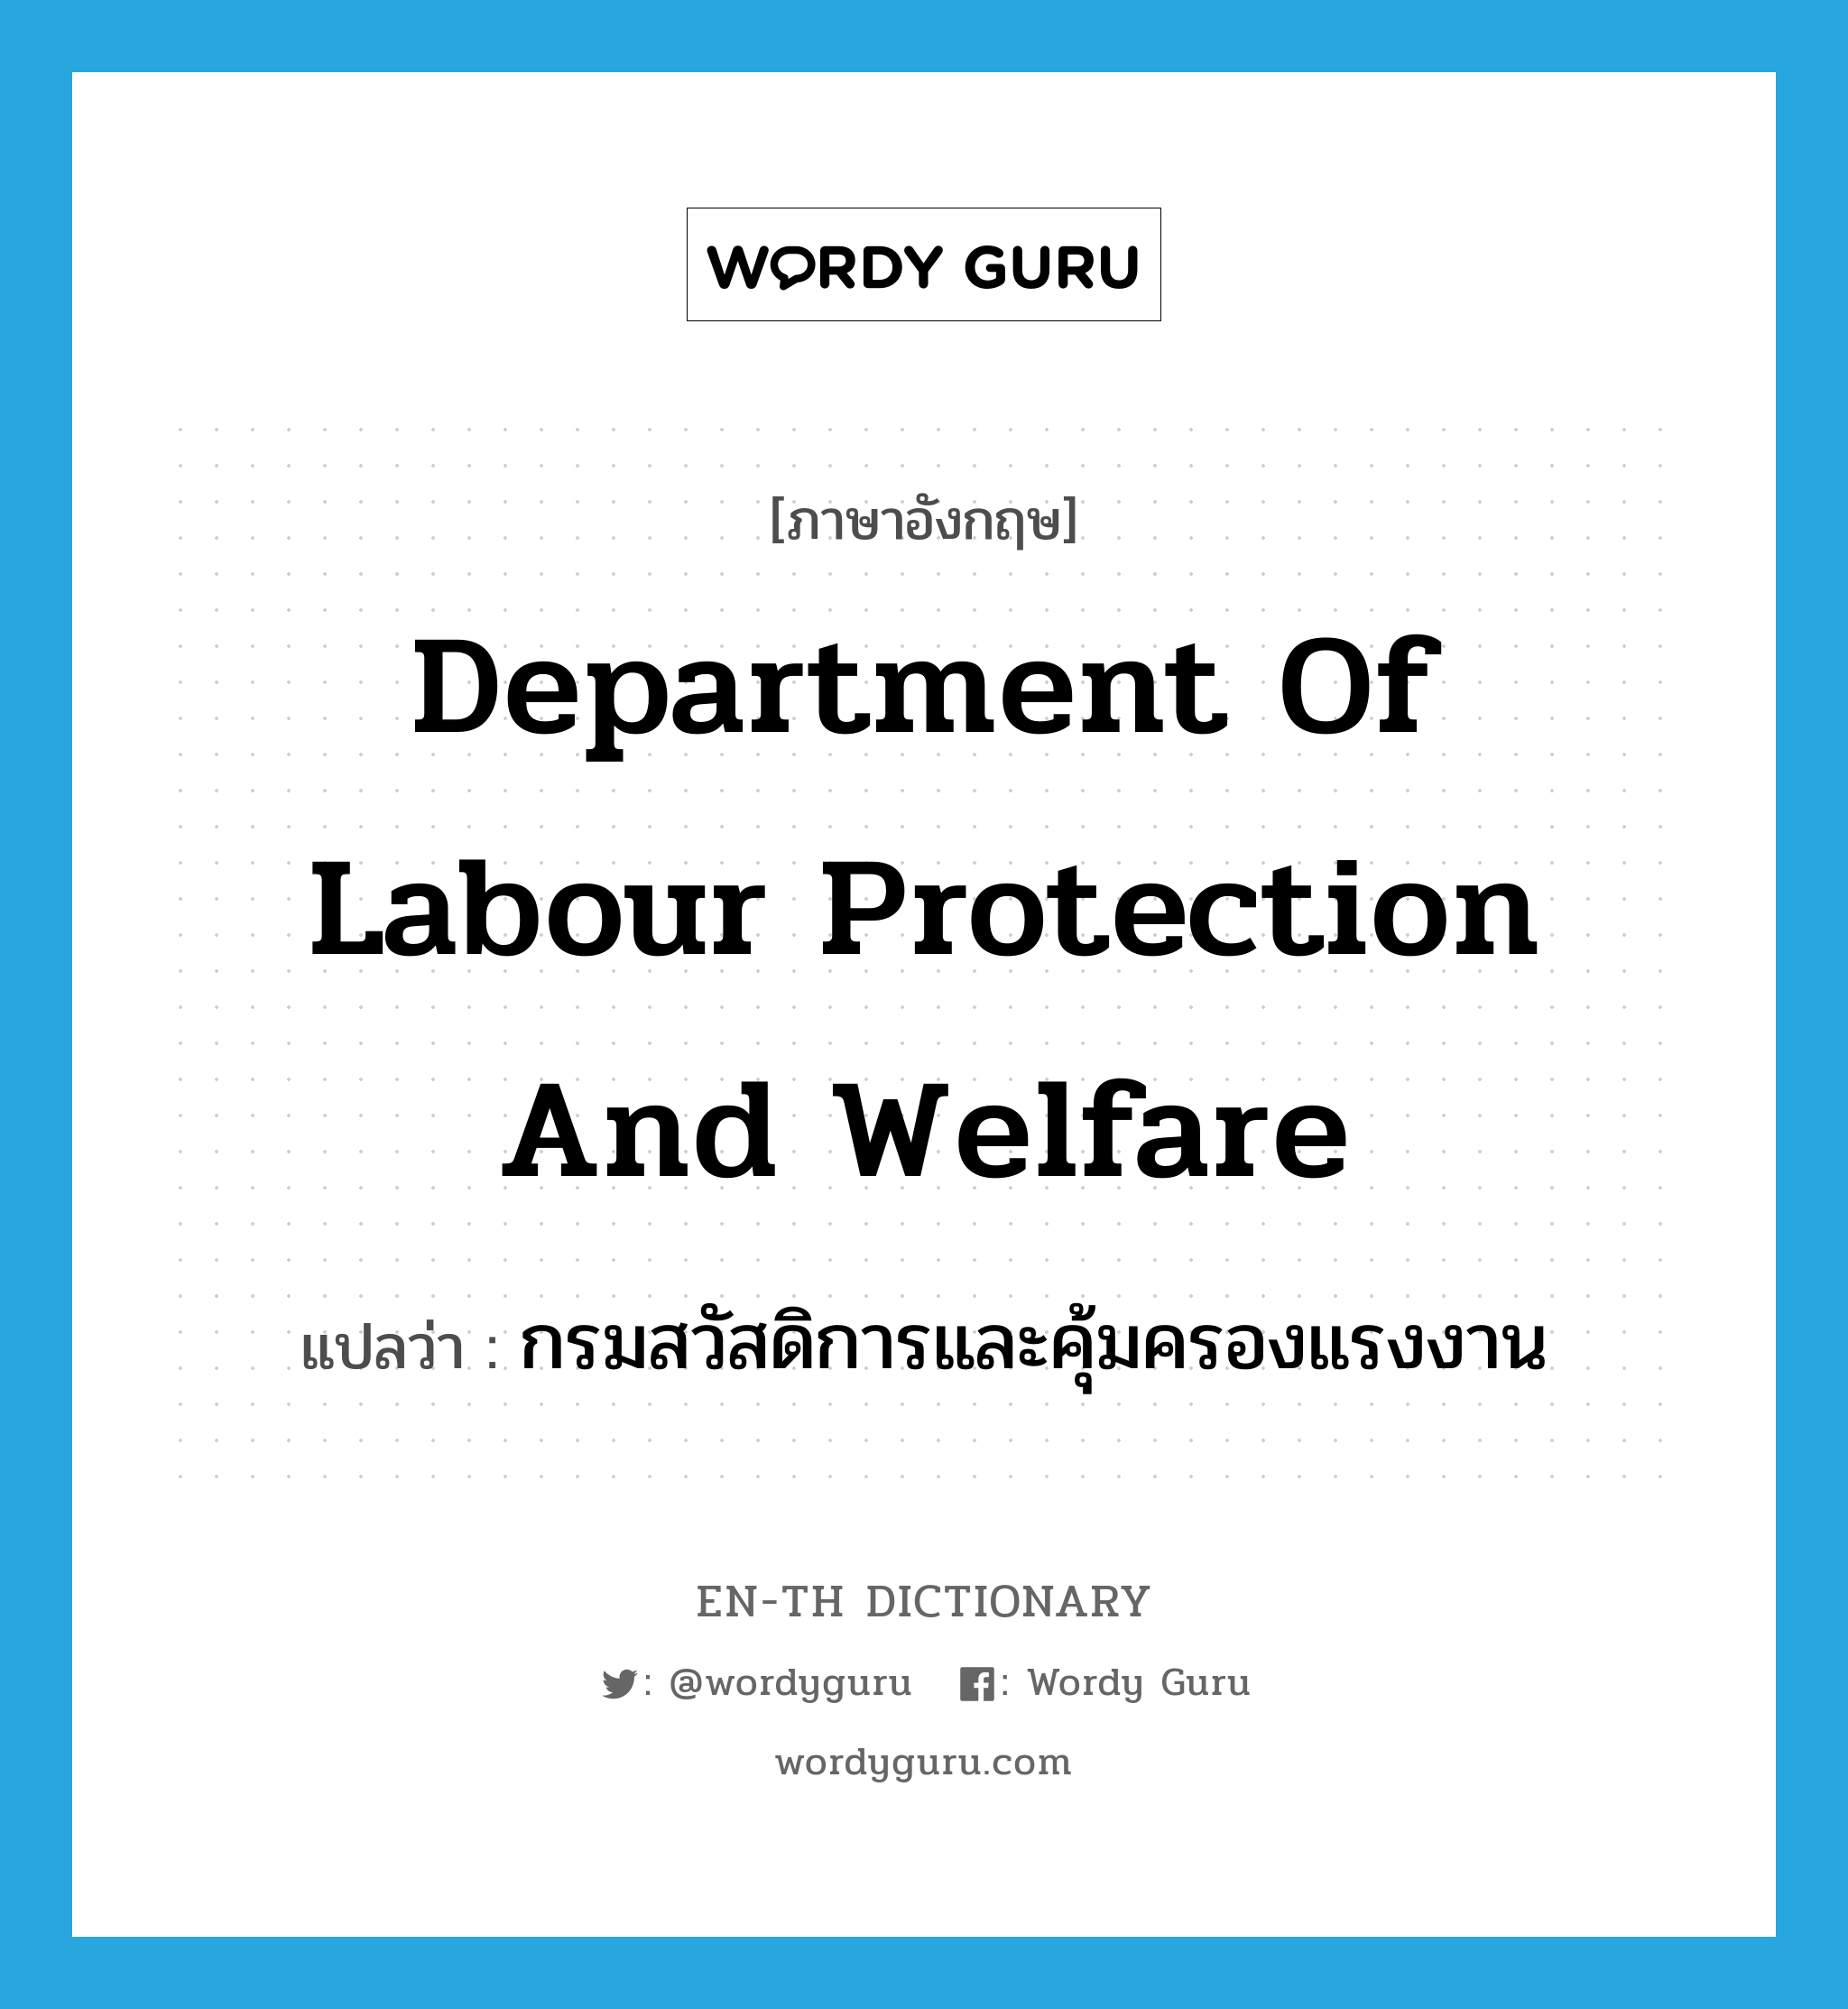 กรมสวัสดิการและคุ้มครองแรงงาน ภาษาอังกฤษ?, คำศัพท์ภาษาอังกฤษ กรมสวัสดิการและคุ้มครองแรงงาน แปลว่า Department of Labour Protection and Welfare ประเภท N หมวด N